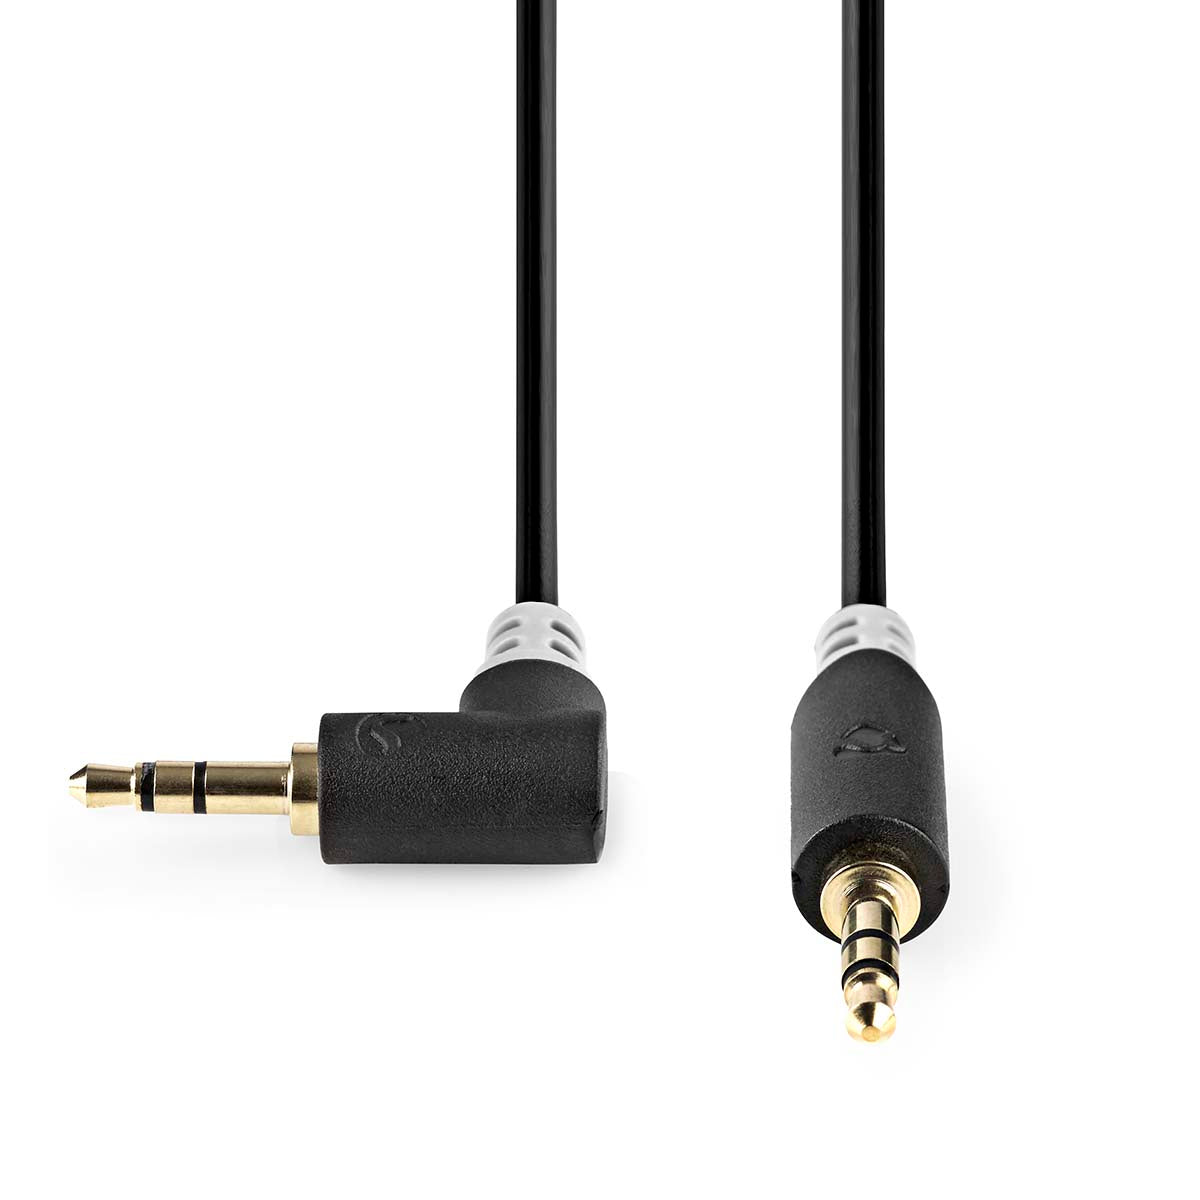 Stereo-Audiokabel | 3.5 mm Stecker | 3.5 mm Stecker | Vergoldet | 1.00 m | Rund | Anthrazit | Box